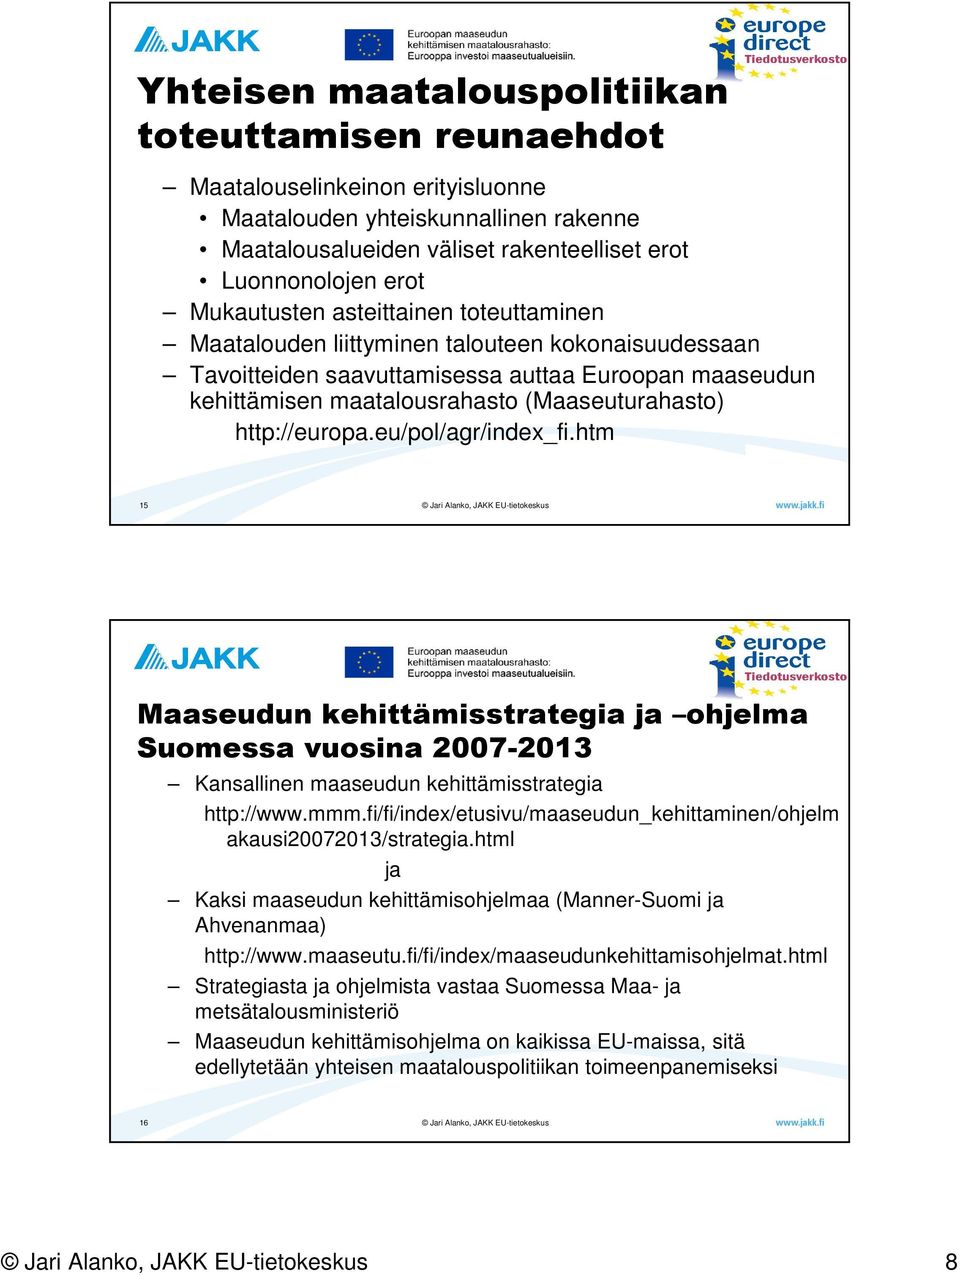 http://europa.eu/pol/agr/index_fi.htm 15 Maaseudun kehittämisstrategia ja ohjelma Suomessa vuosina 2007-2013 Kansallinen maaseudun kehittämisstrategia http://www.mmm.